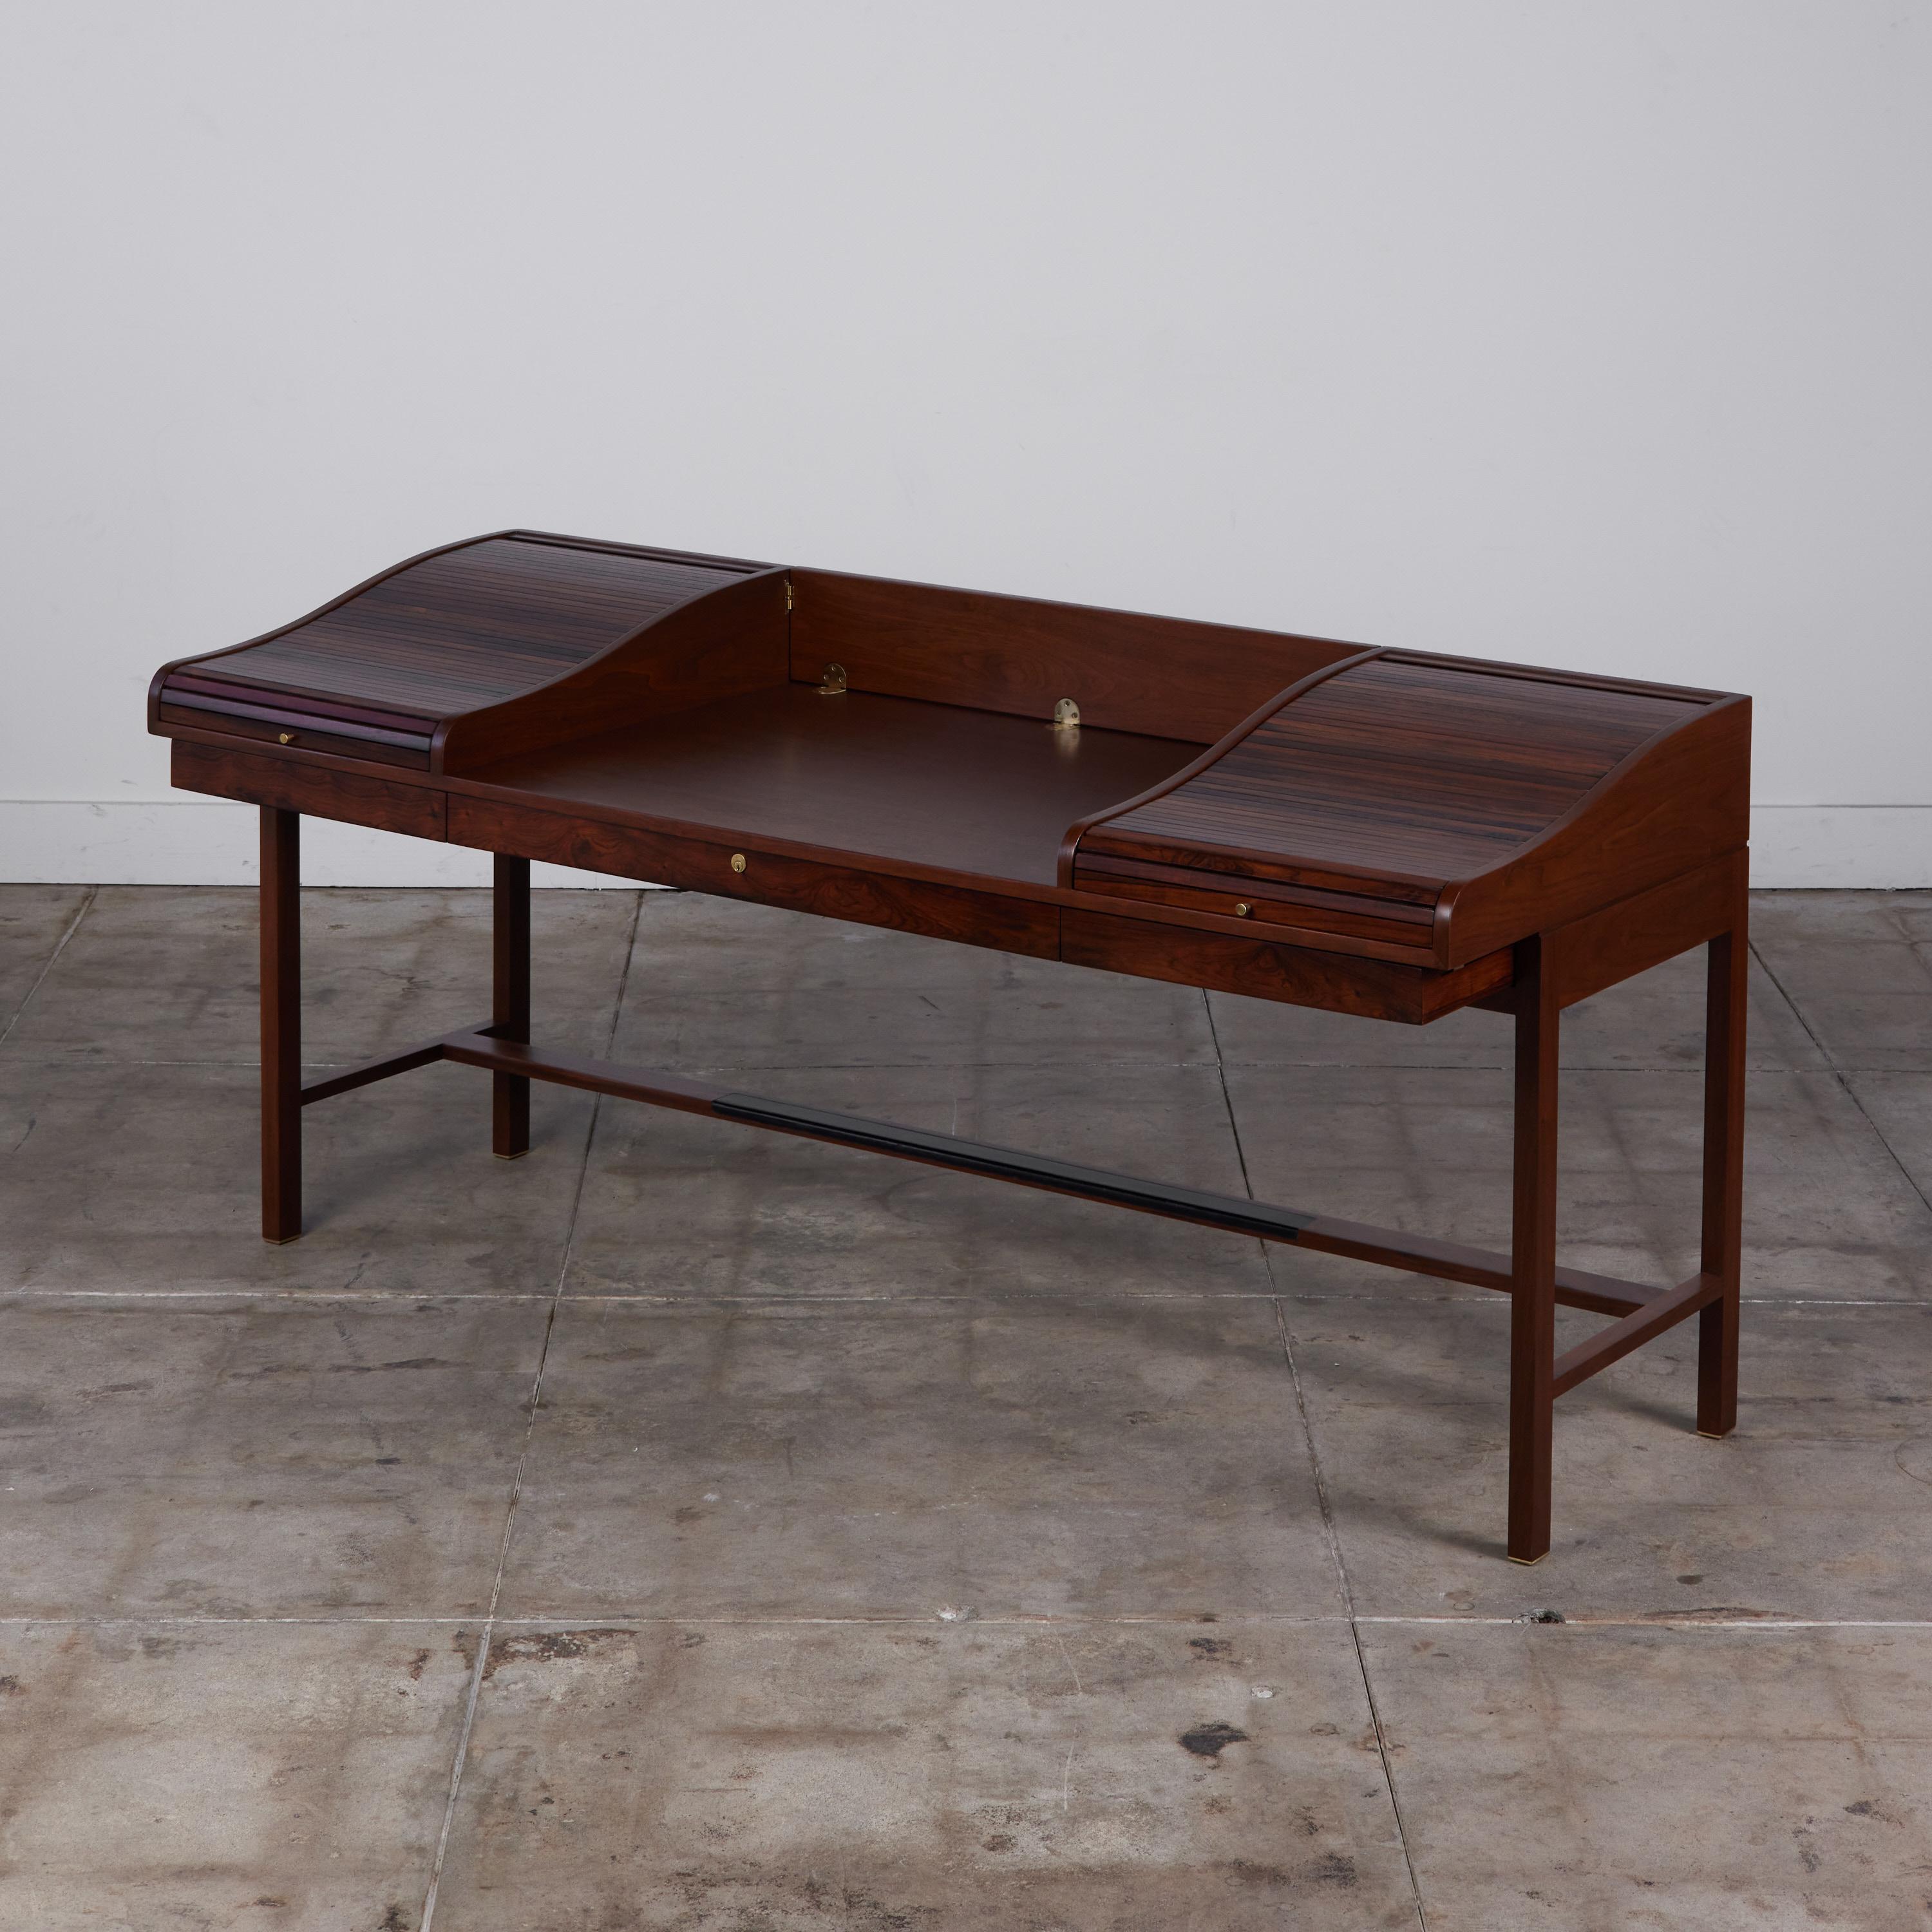 Schreibtisch aus Palisanderholz von Edward Wormley, ca. 1950, USA, für Dunbar. Der Schreibtisch hat drei flache Schubladen, die sich über die gesamte Länge des Schreibtisches erstrecken. Auf der Oberseite des Schreibtisches befinden sich zwei